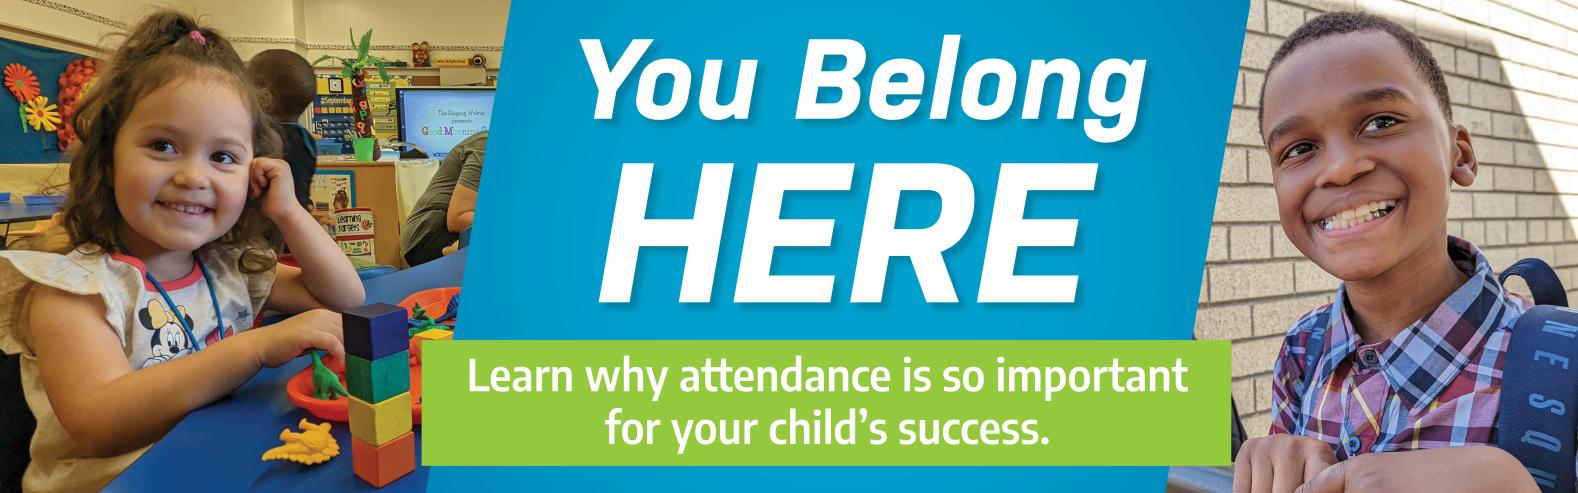 You Belong Here - Attendance